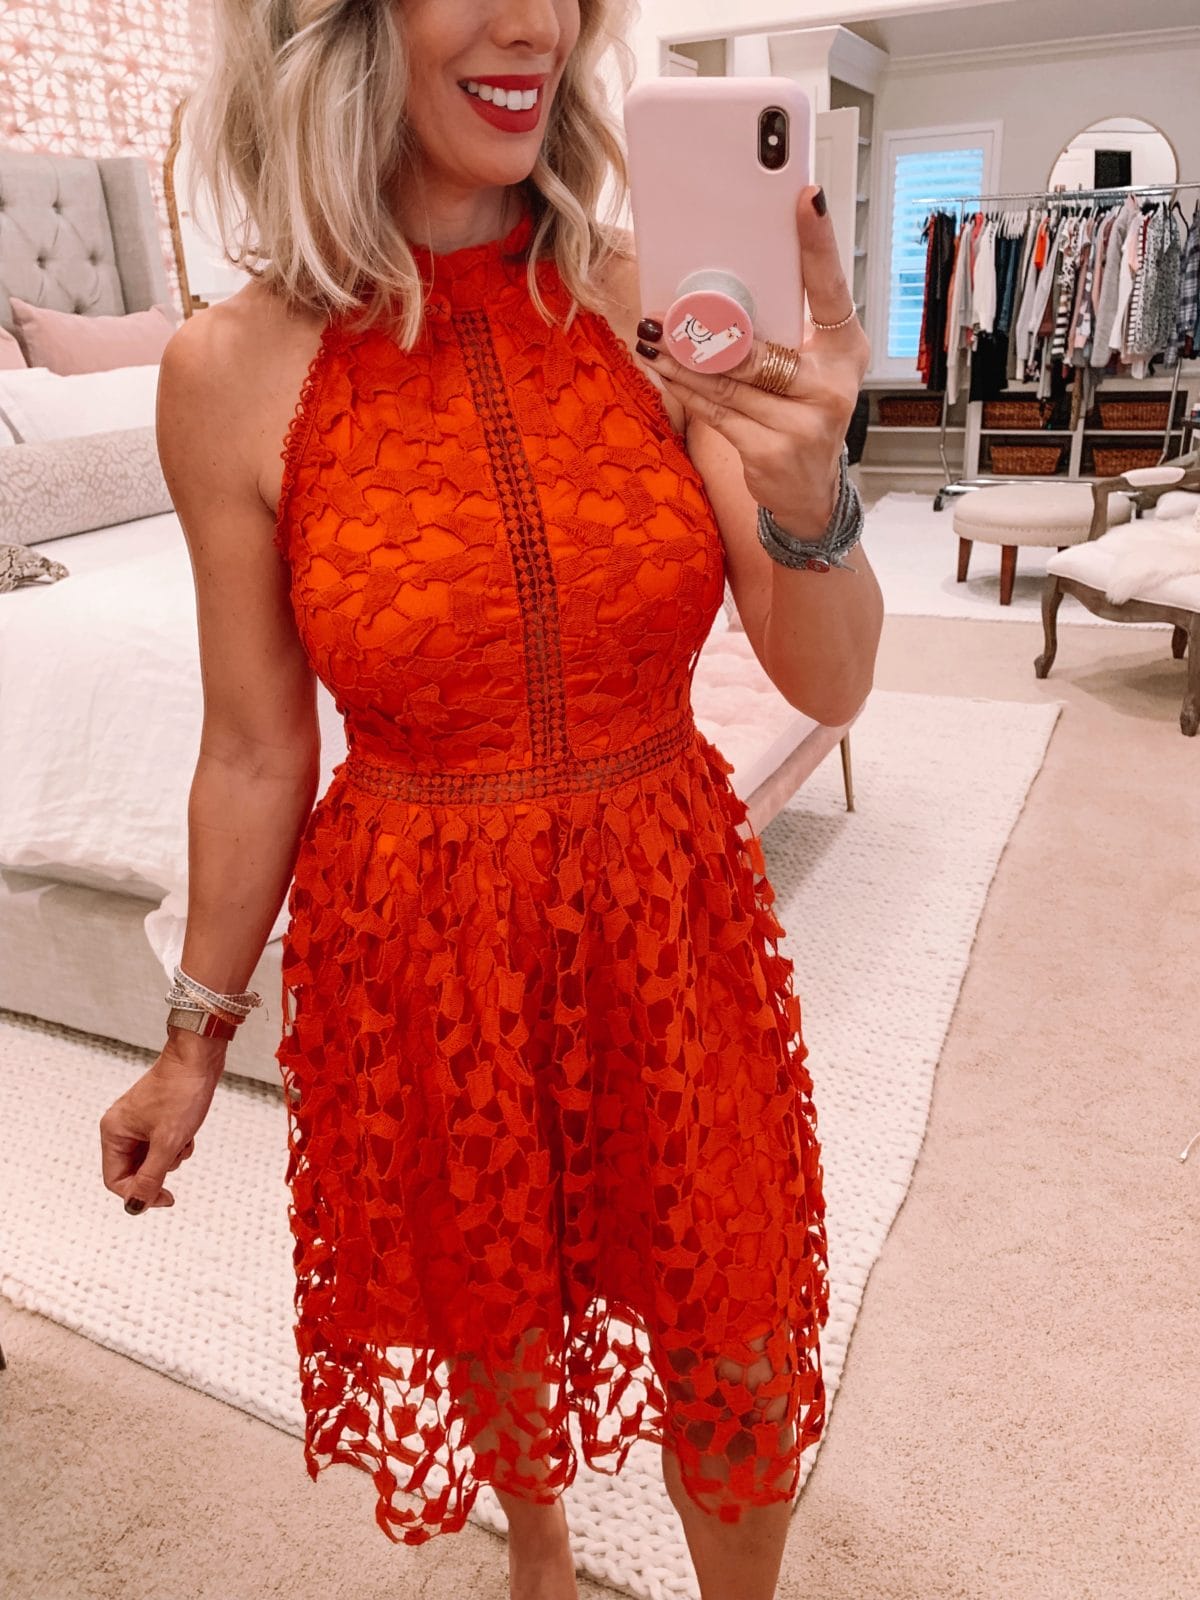 Amazon fashion haul, red lace dress 